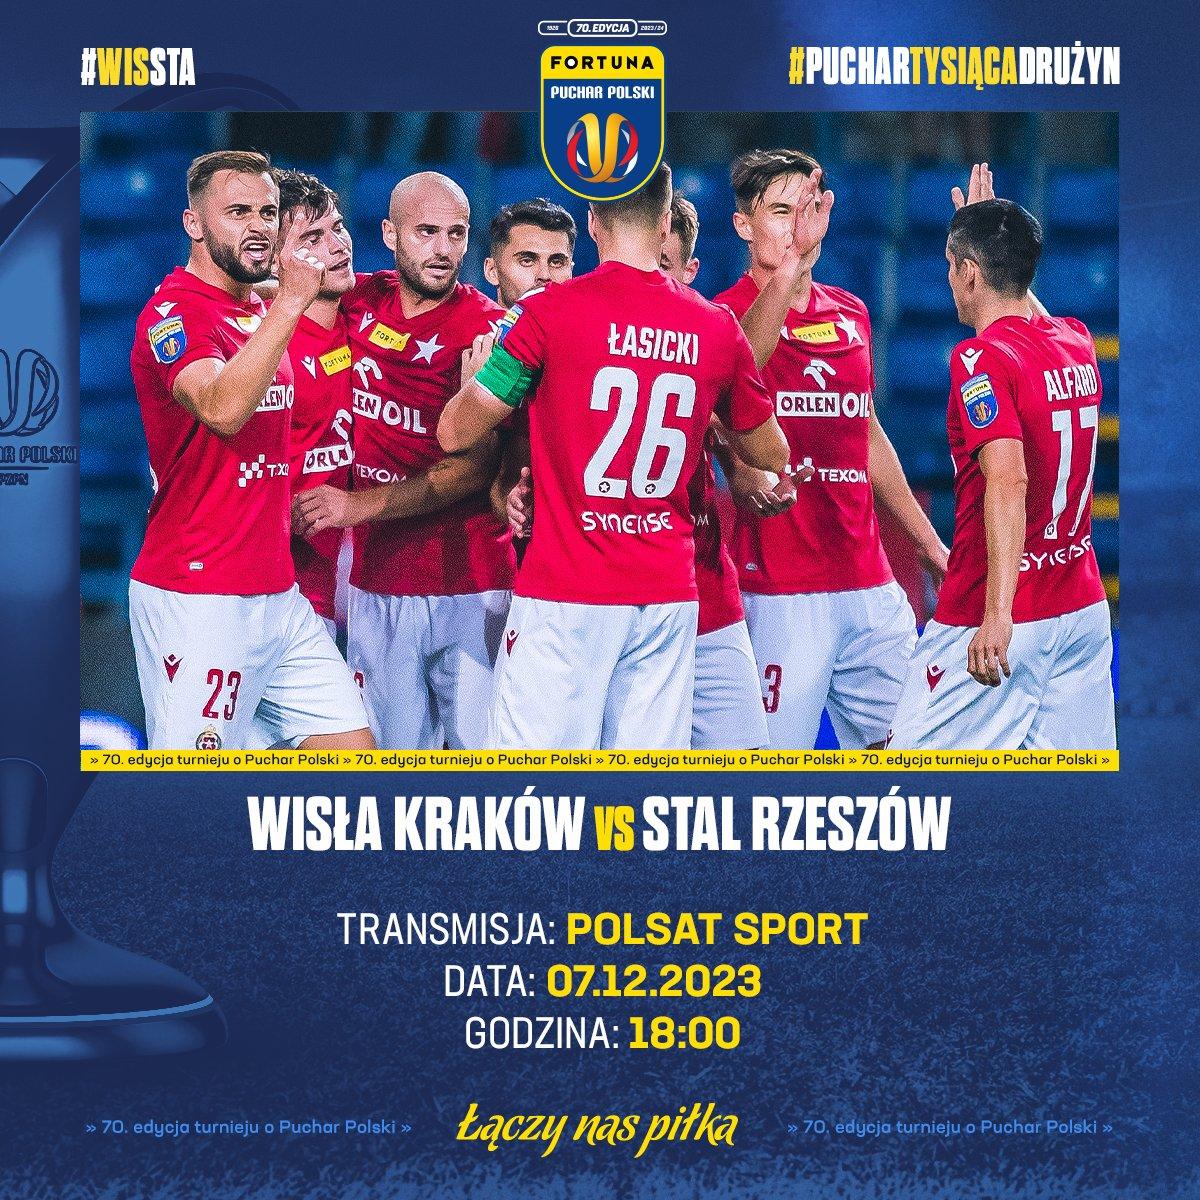 Wisła Kraków - Stal Rzeszów 4:1 (07.12.2023)